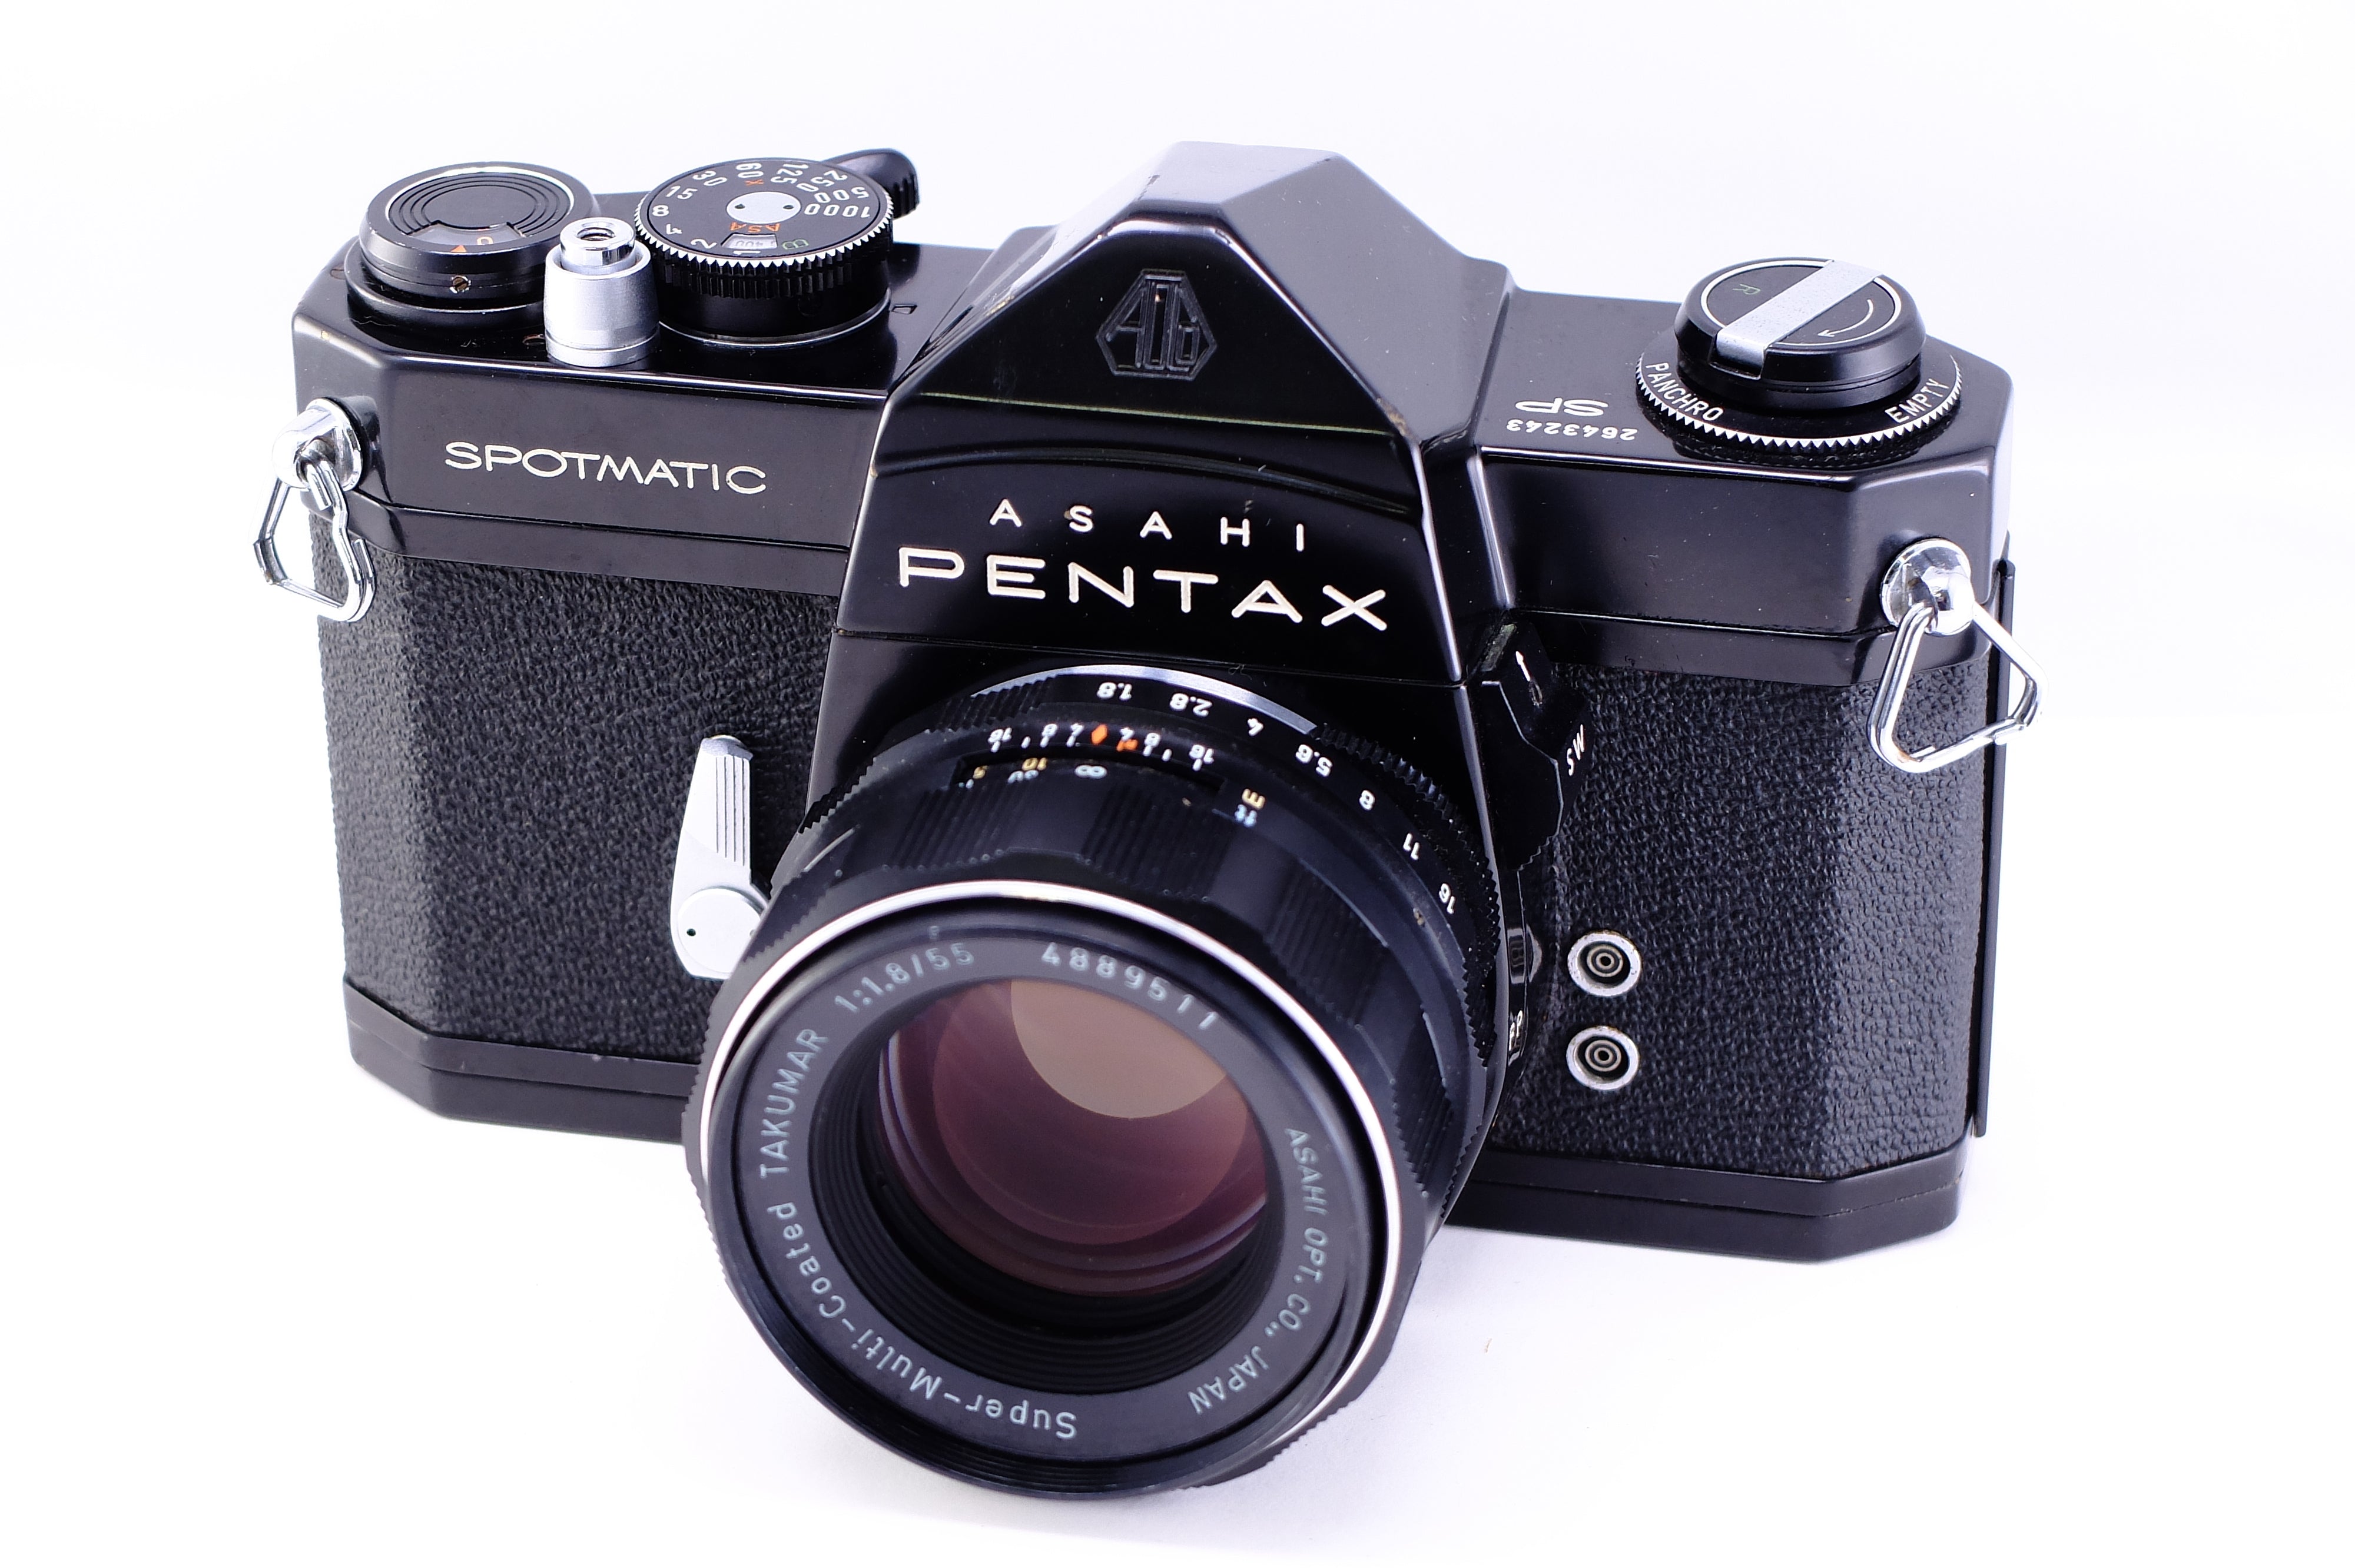 ASAHI PENTAX MX SMC PENTAX 55mm f1.8